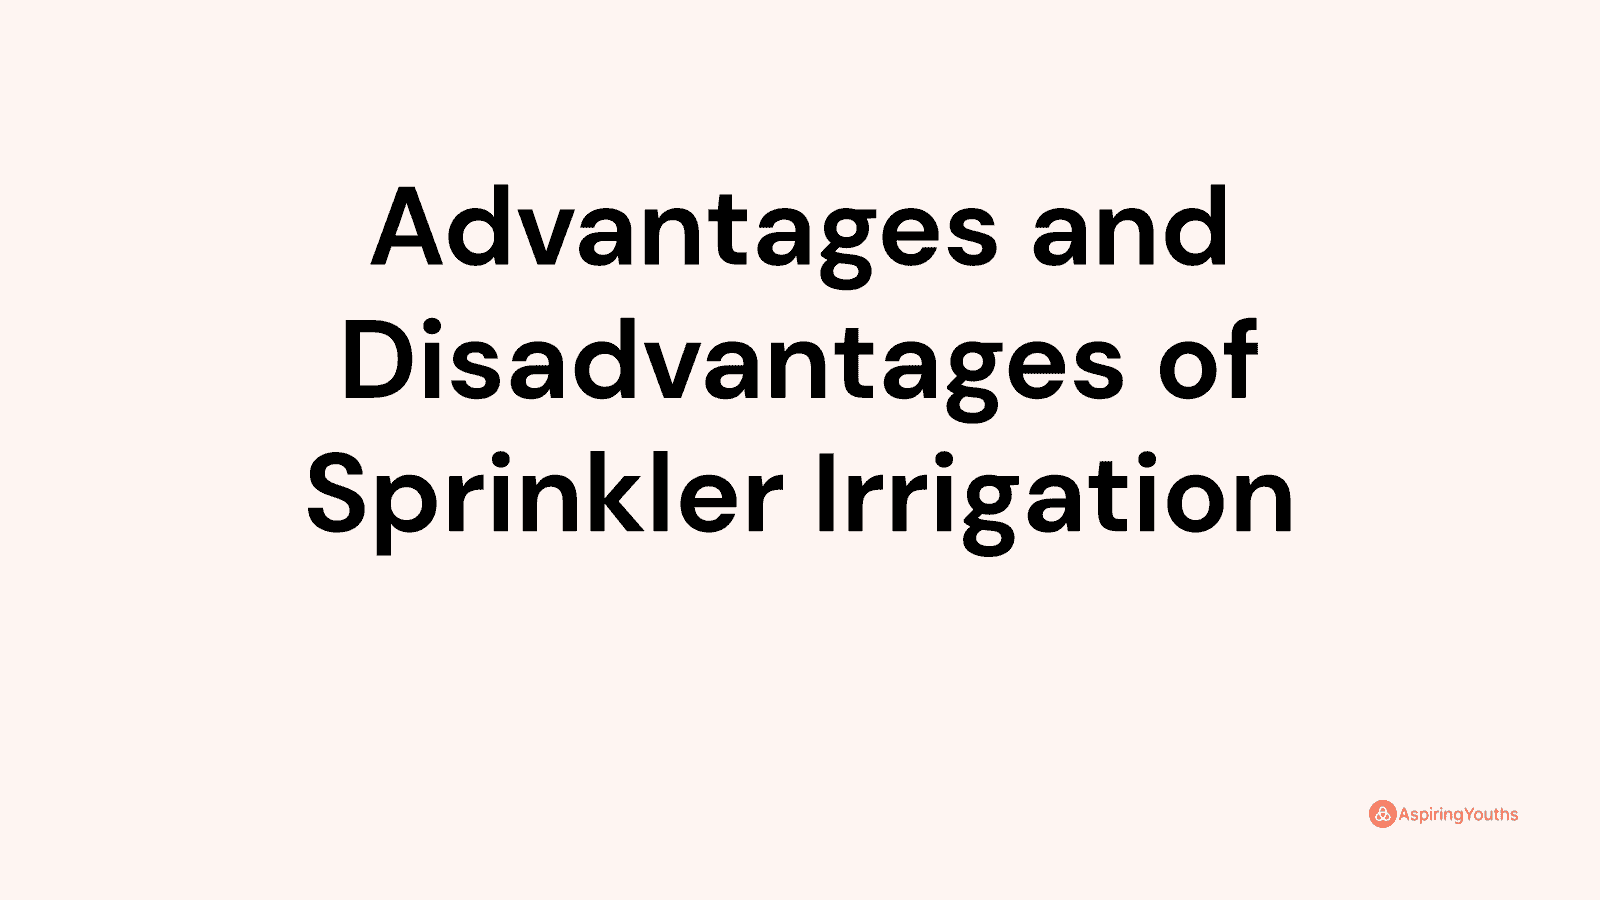 Advantages and disadvantages of Sprinkler Irrigation